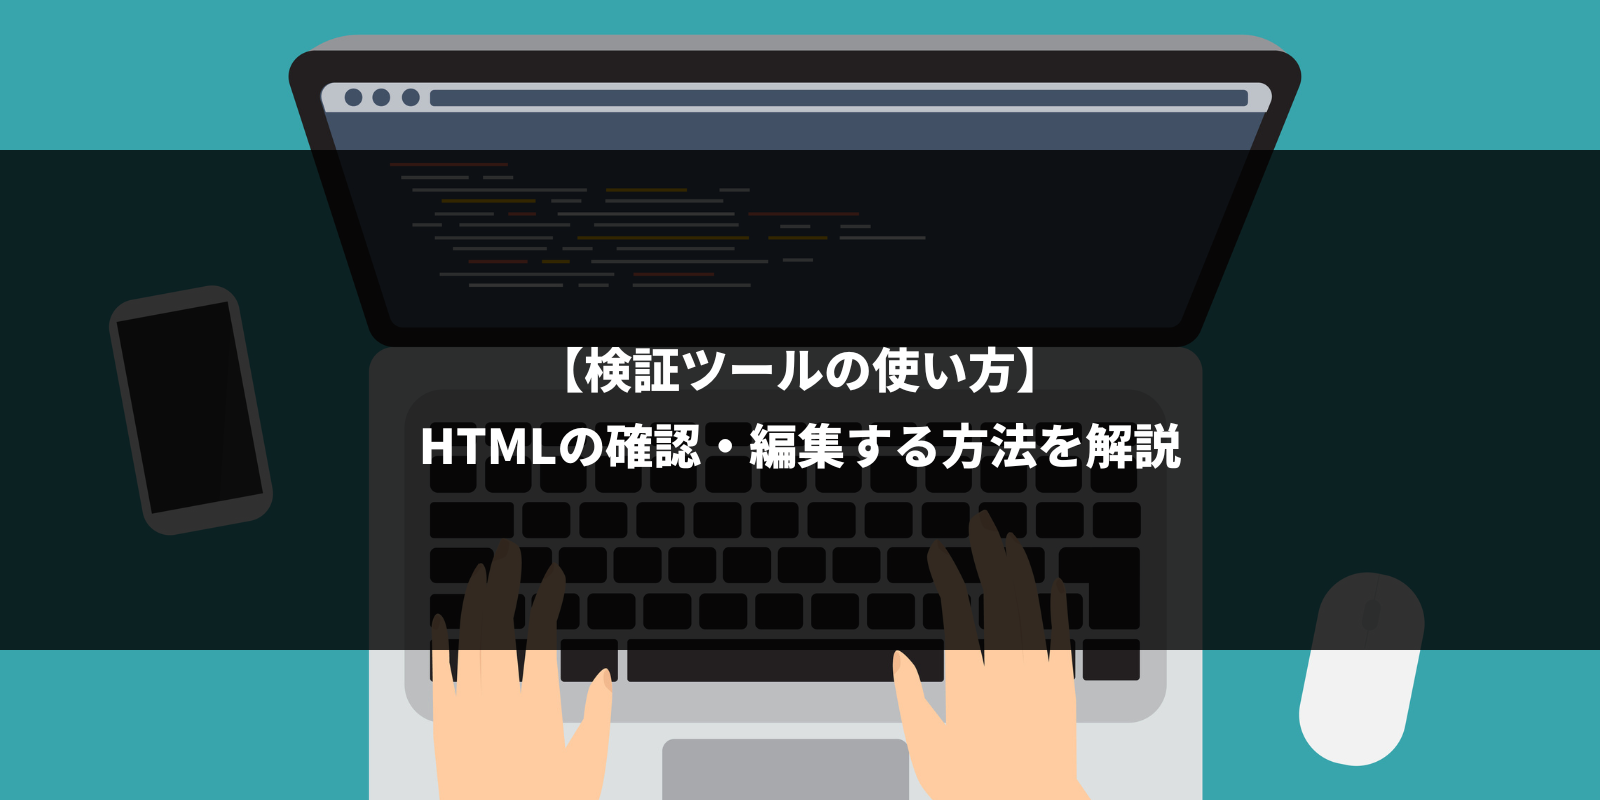 【検証ツールの使い方】HTMLの確認・編集する方法を解説。